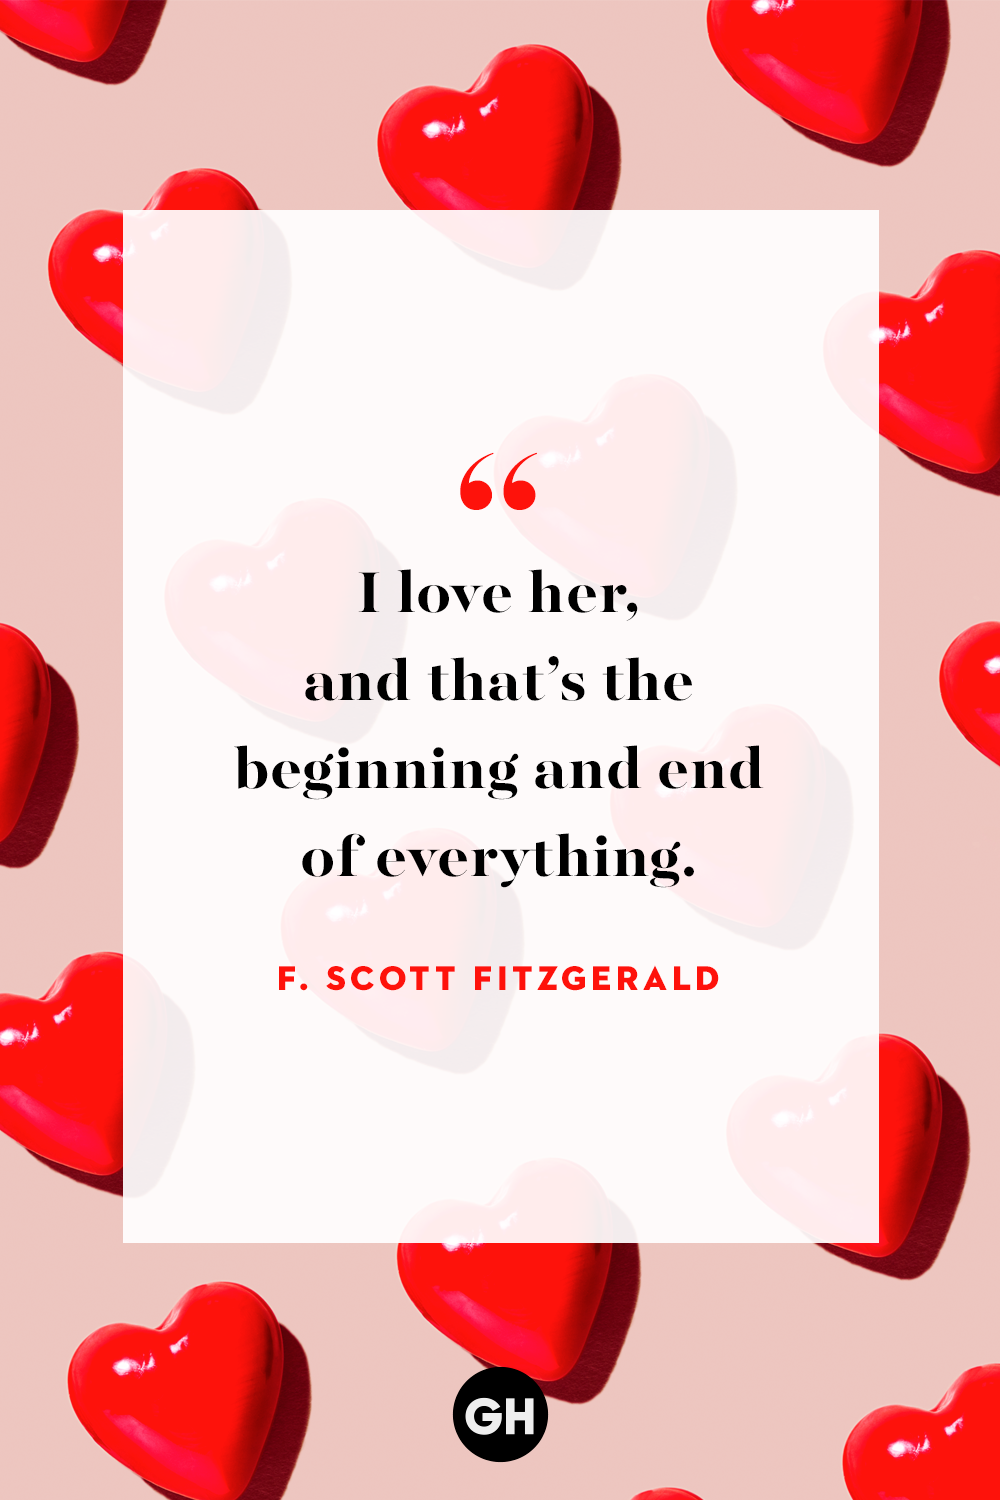 Romantic valentine quotes